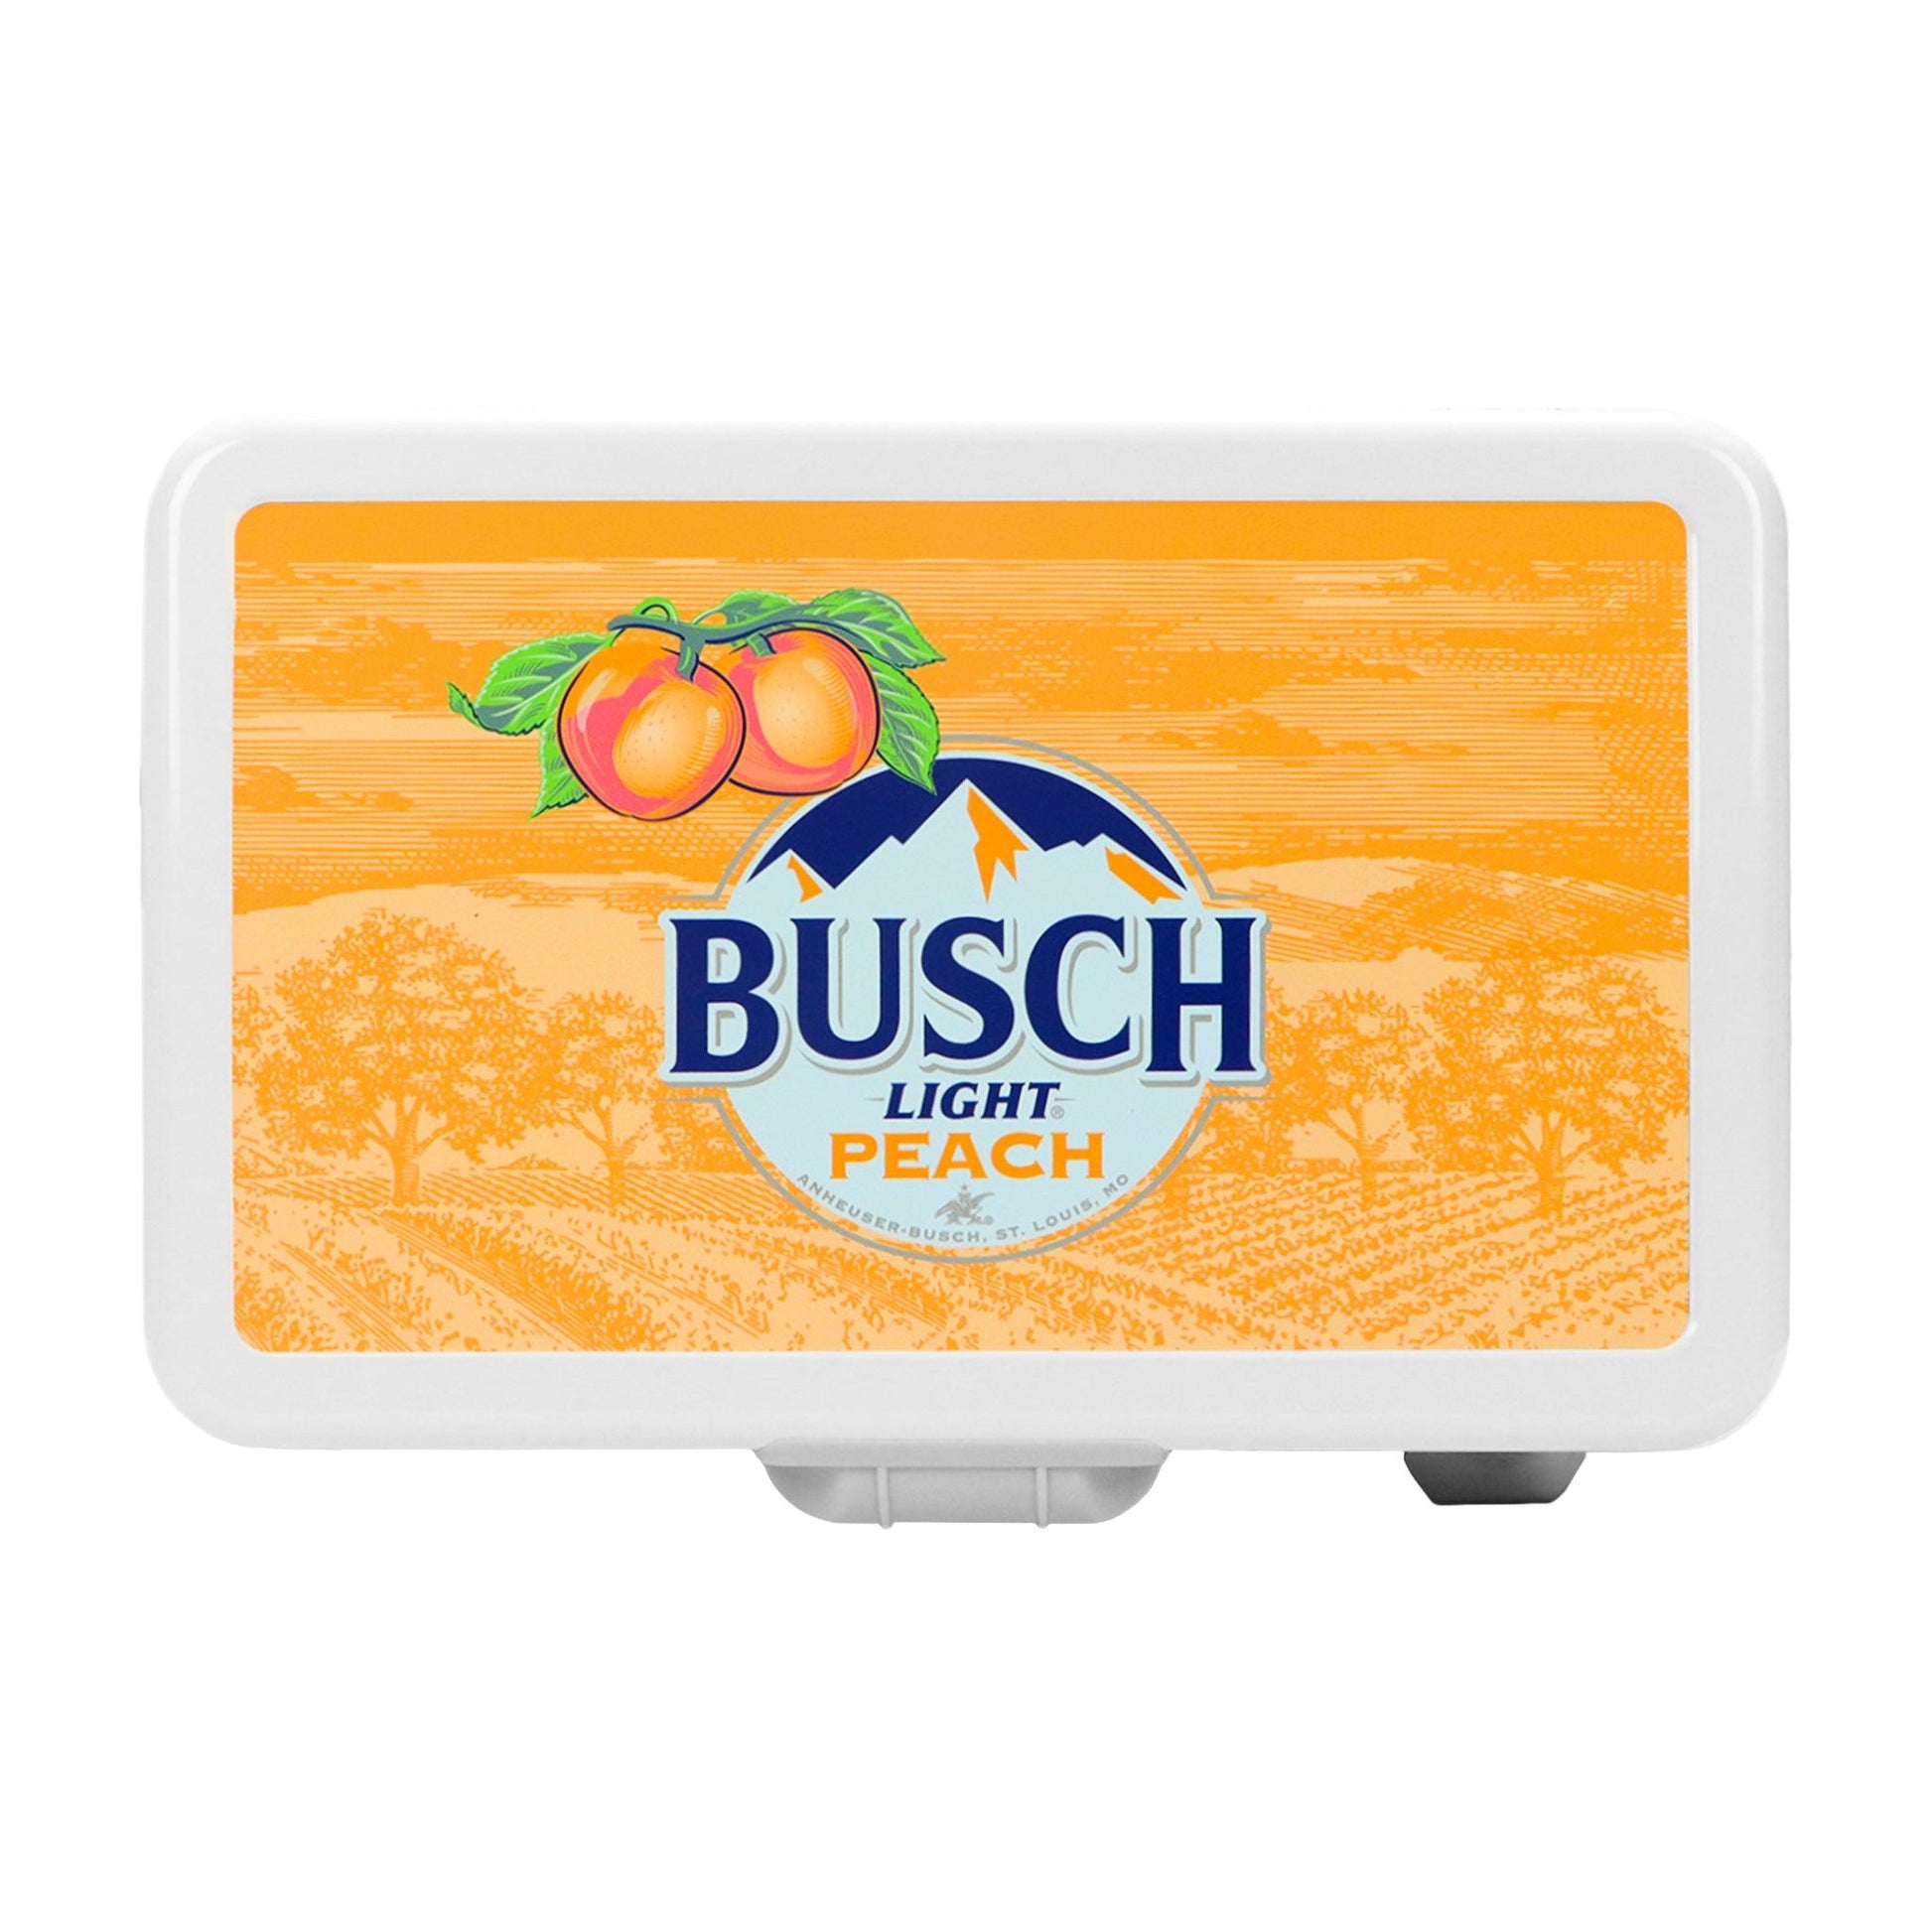 Busch Light Peach cooler - Top Graphic